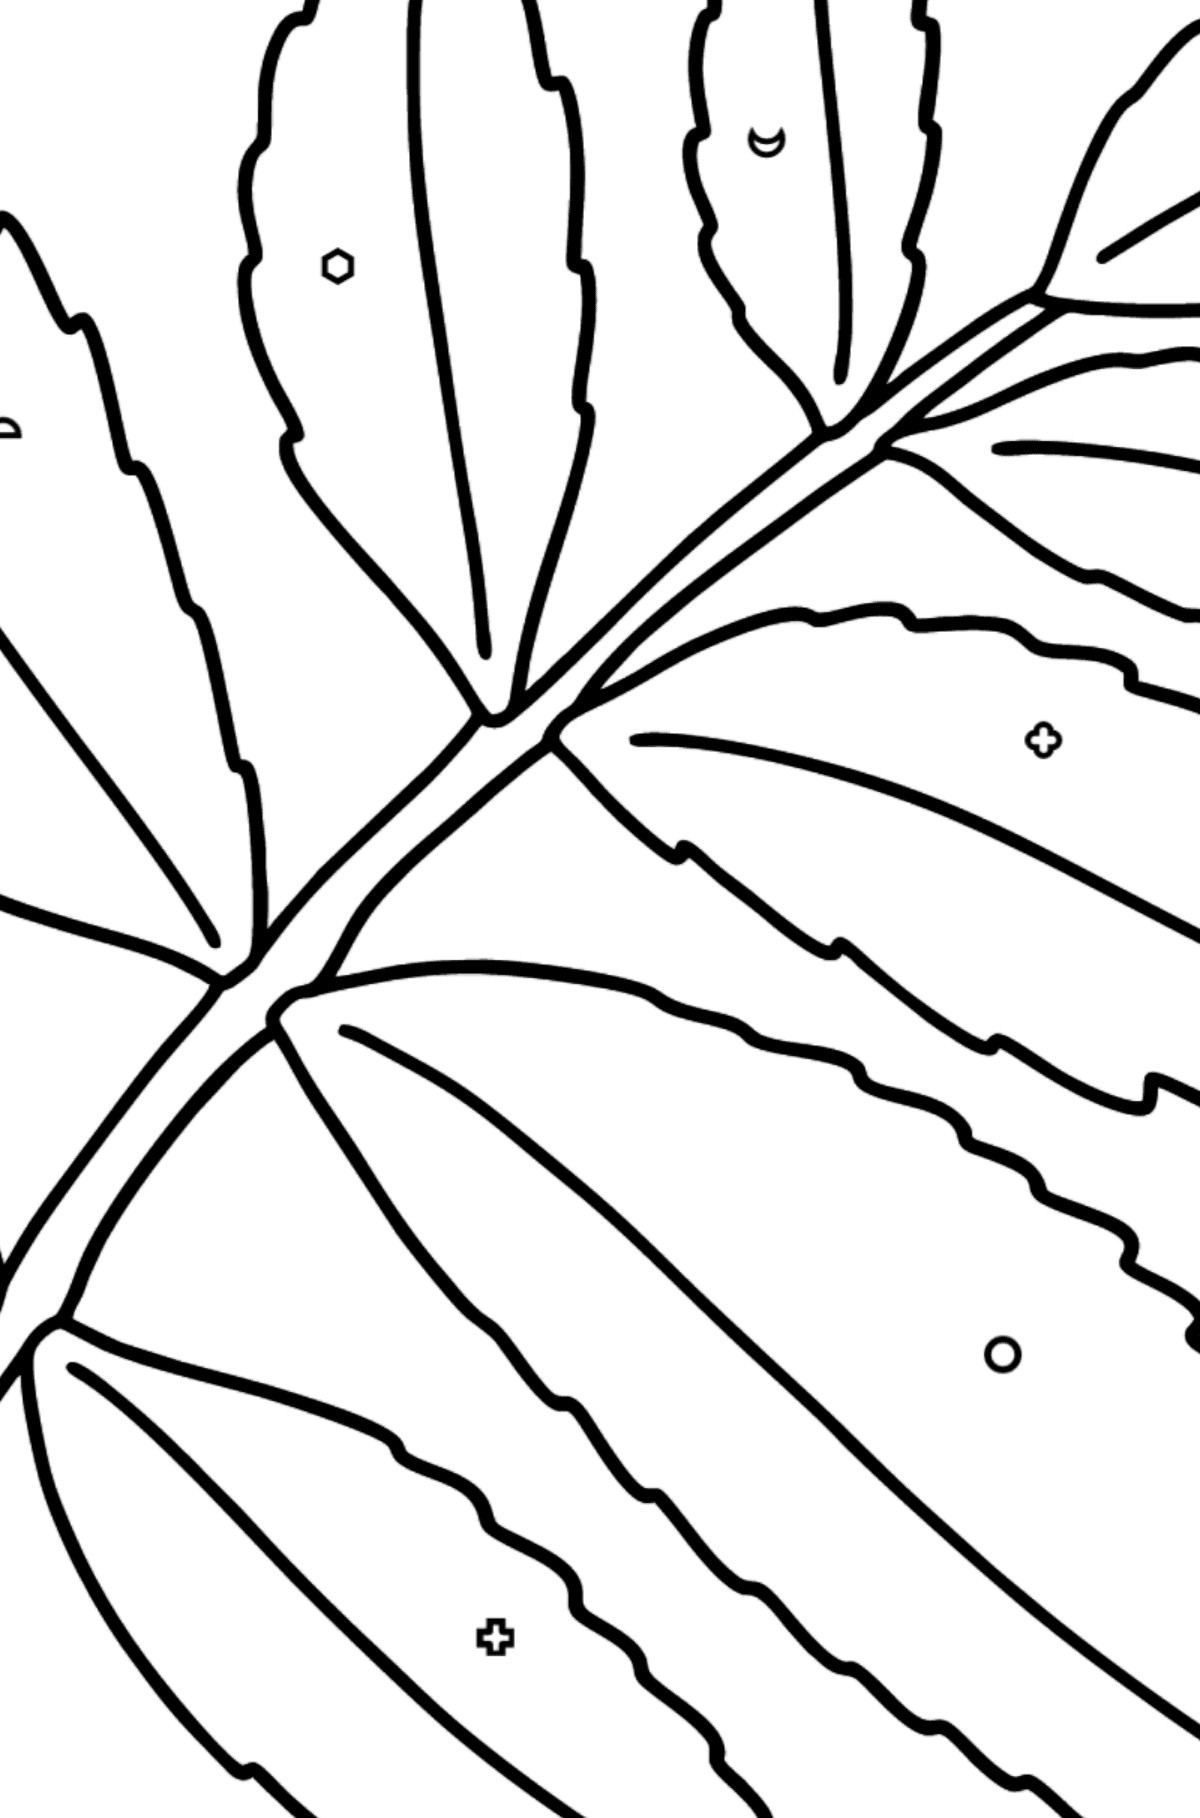 Coloriage - Feuille d'arbre de sumac - Coloriage par Formes Géométriques pour les Enfants